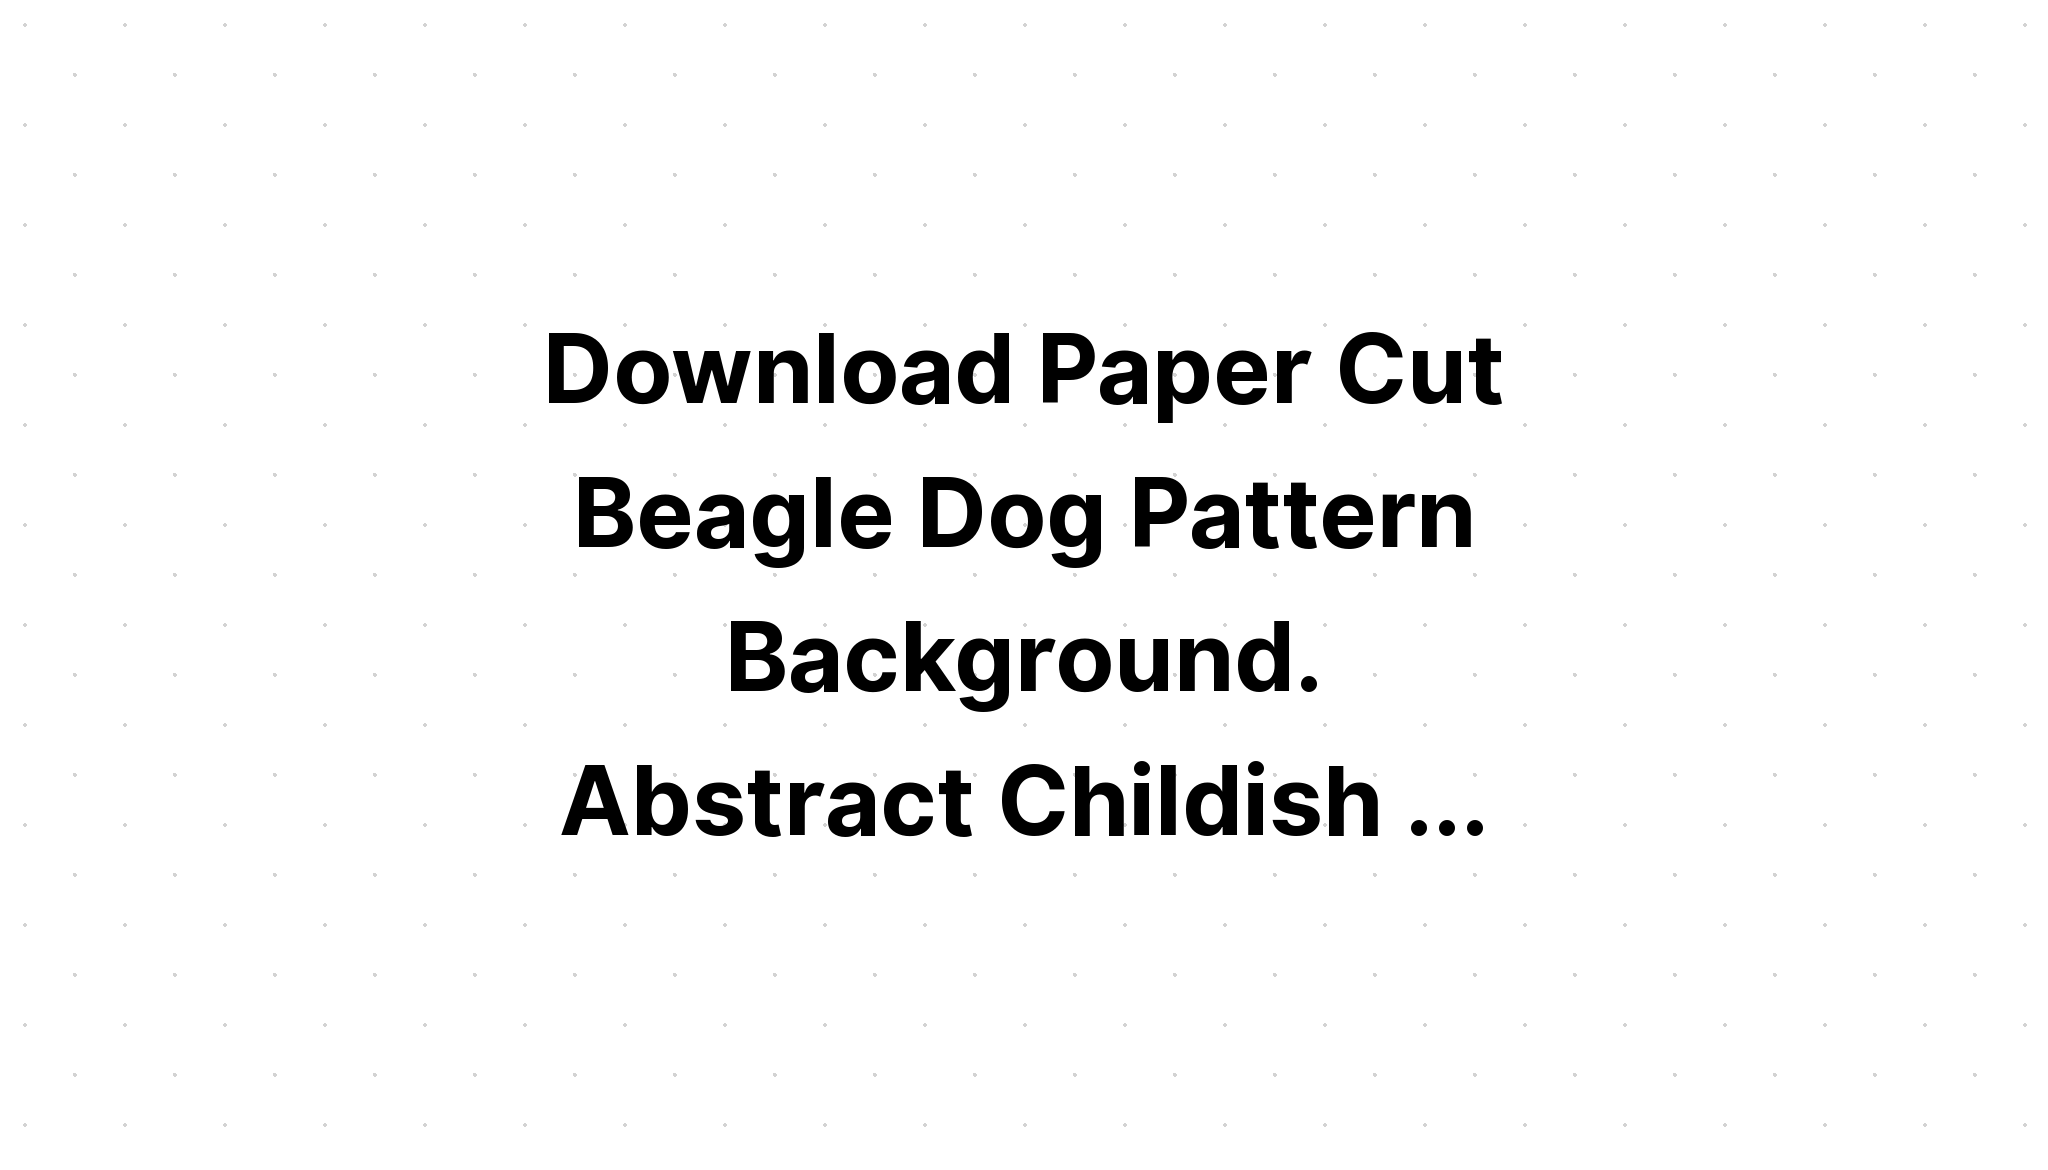 Download Dog Paper Cut Design SVG File